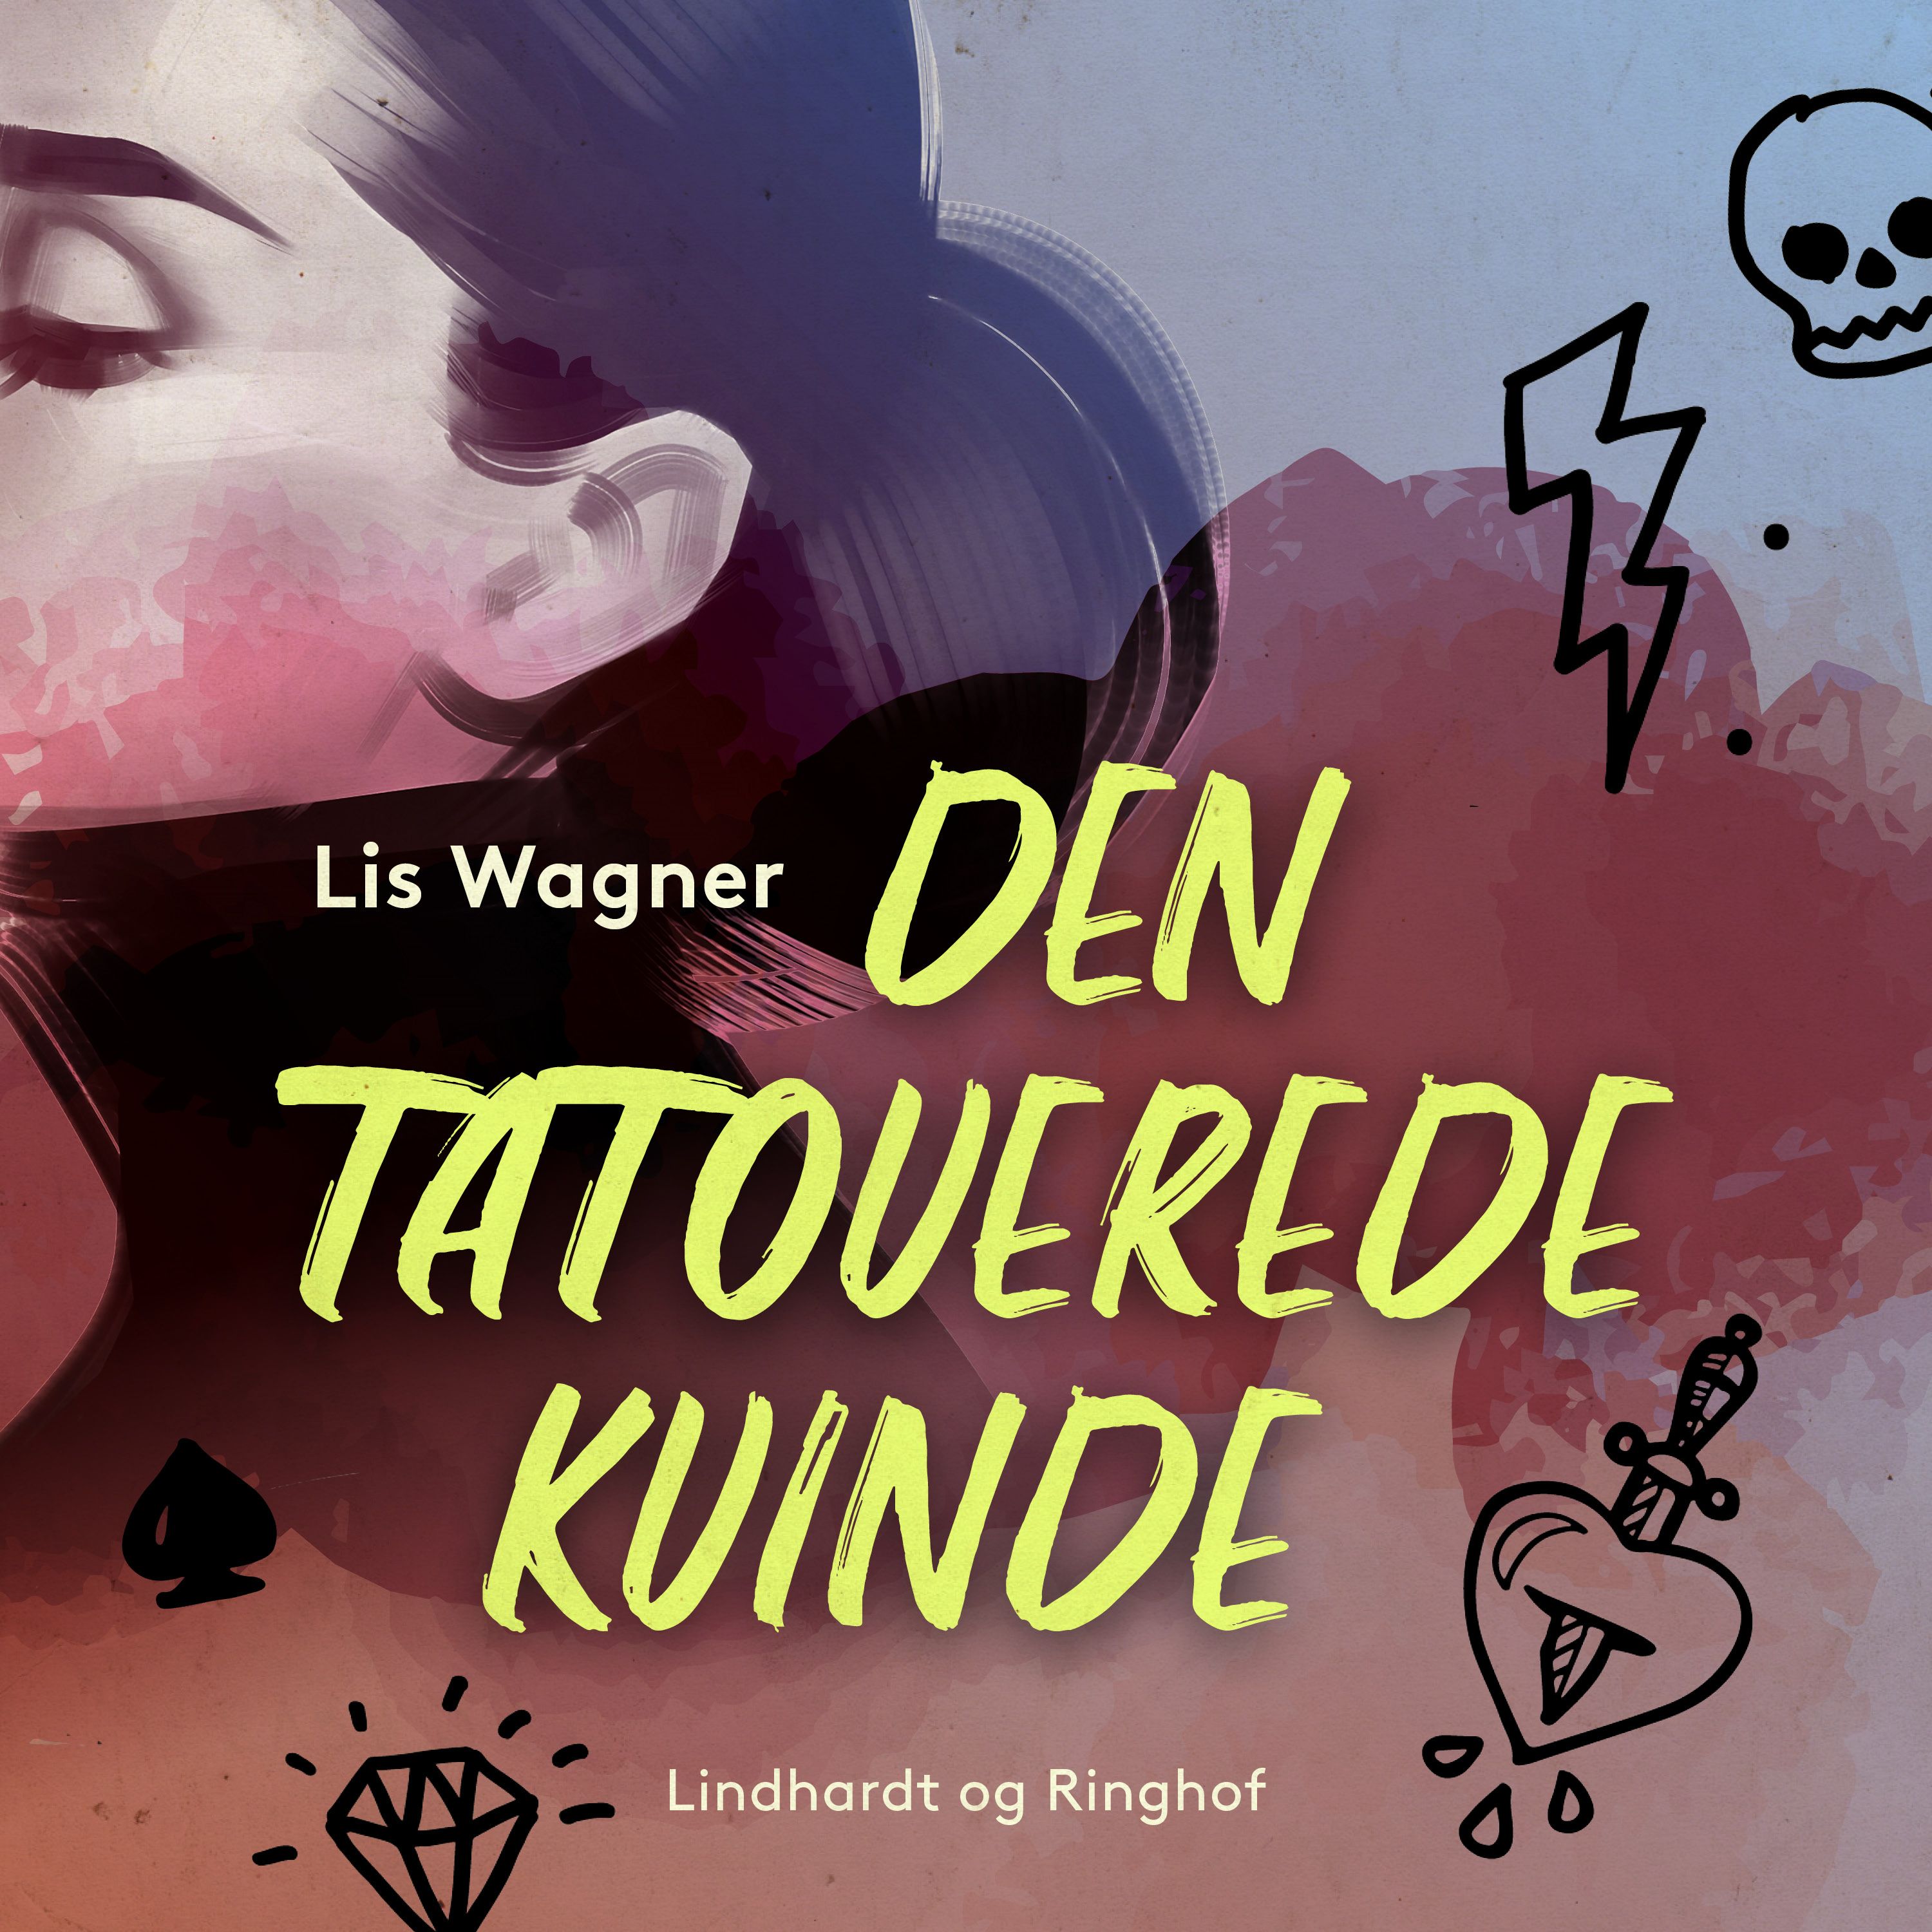 Den tatoverede kvinde, lydbog af Lis Wagner